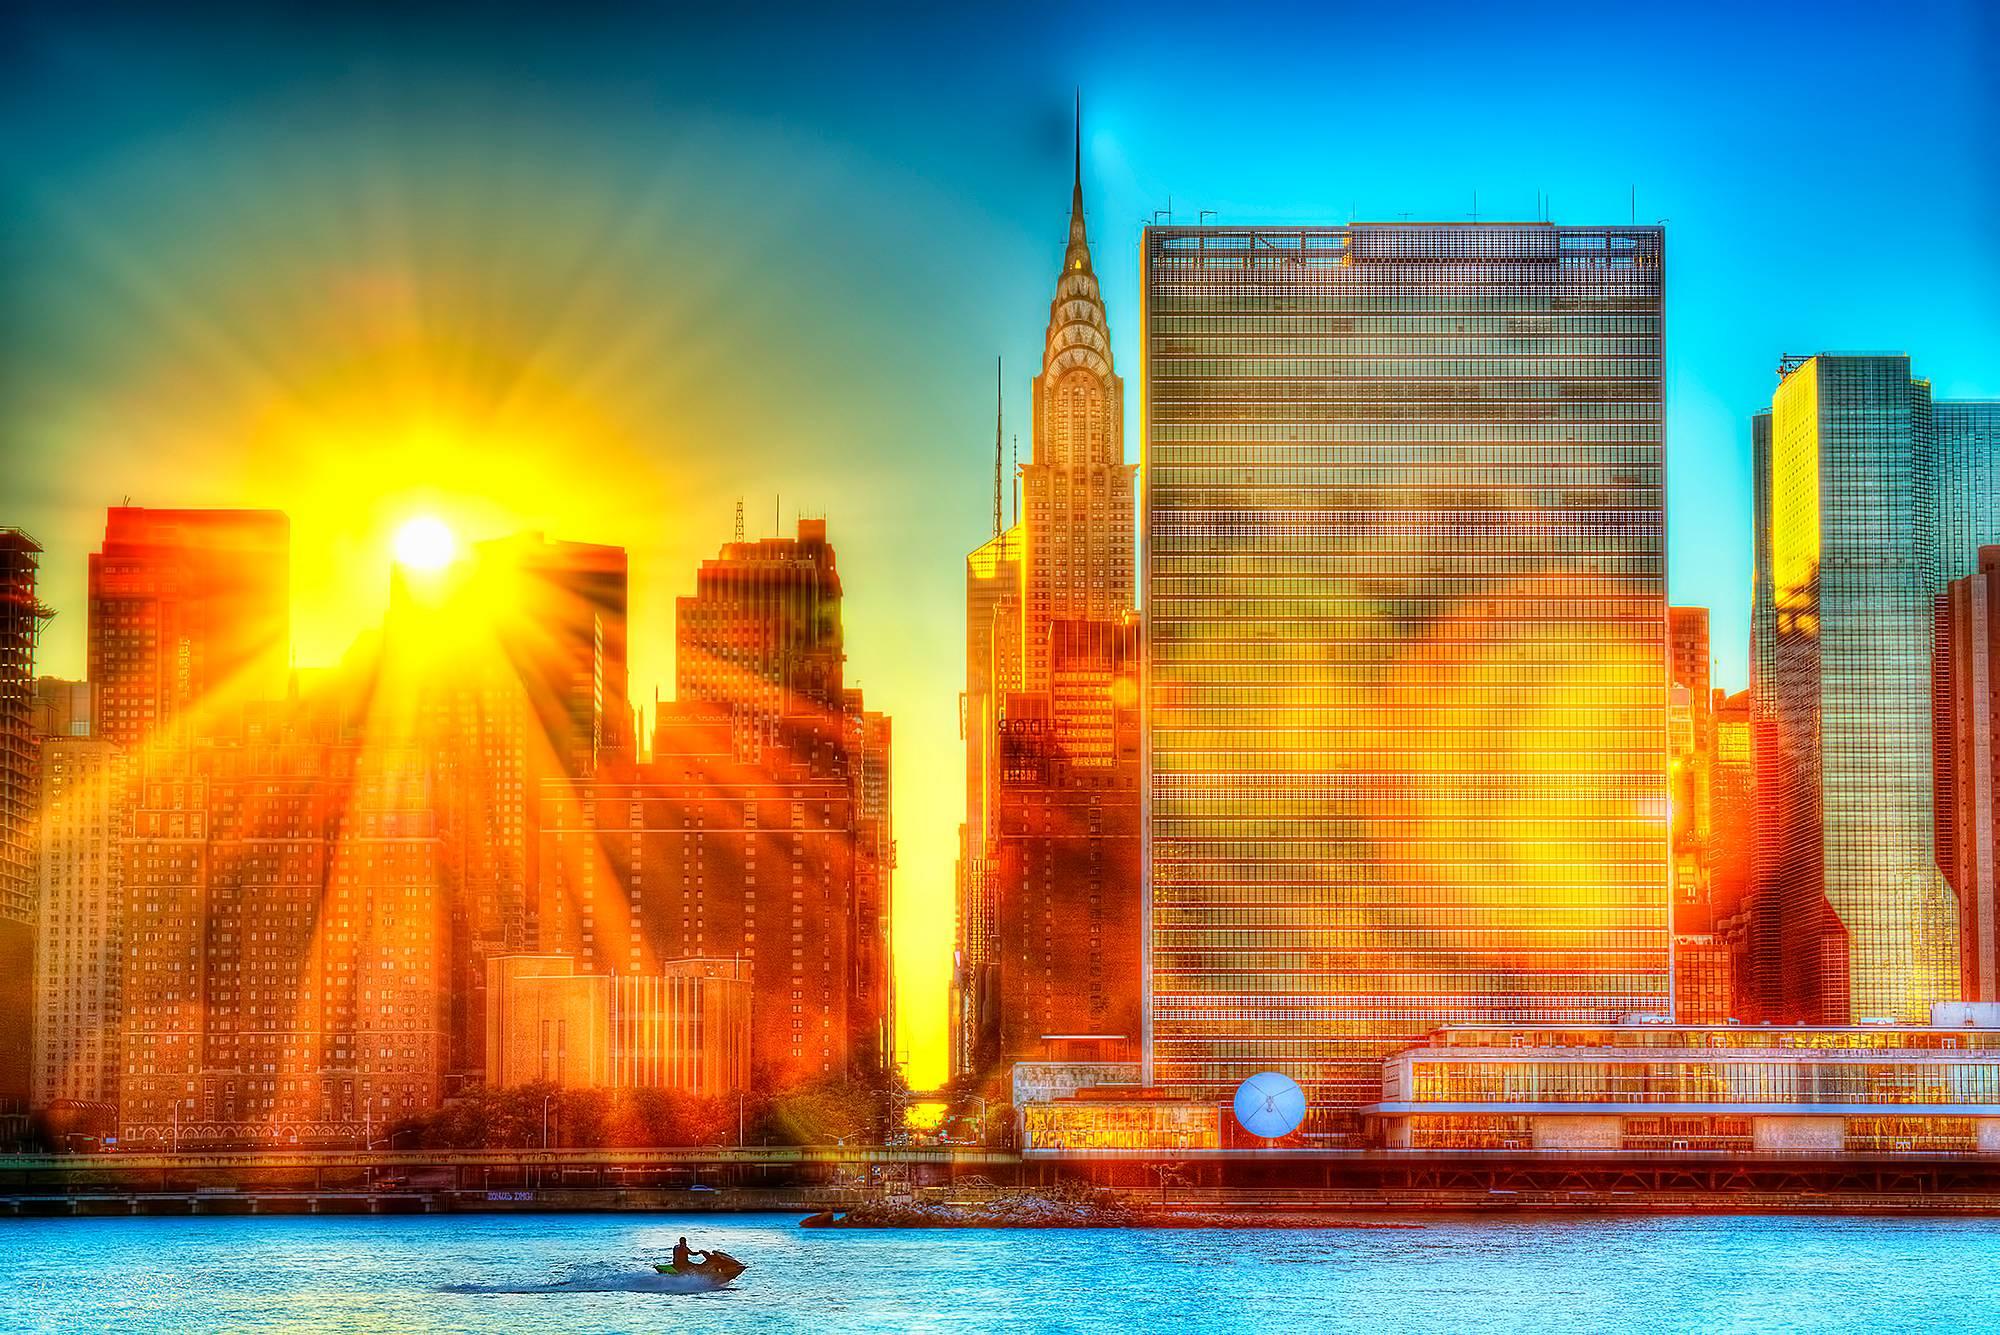 Landscape Photograph Mitchell Funk - Les Nations unies et la ligne d'horizon de Manhattan enveloppée de Divine Light avec jupe à jet